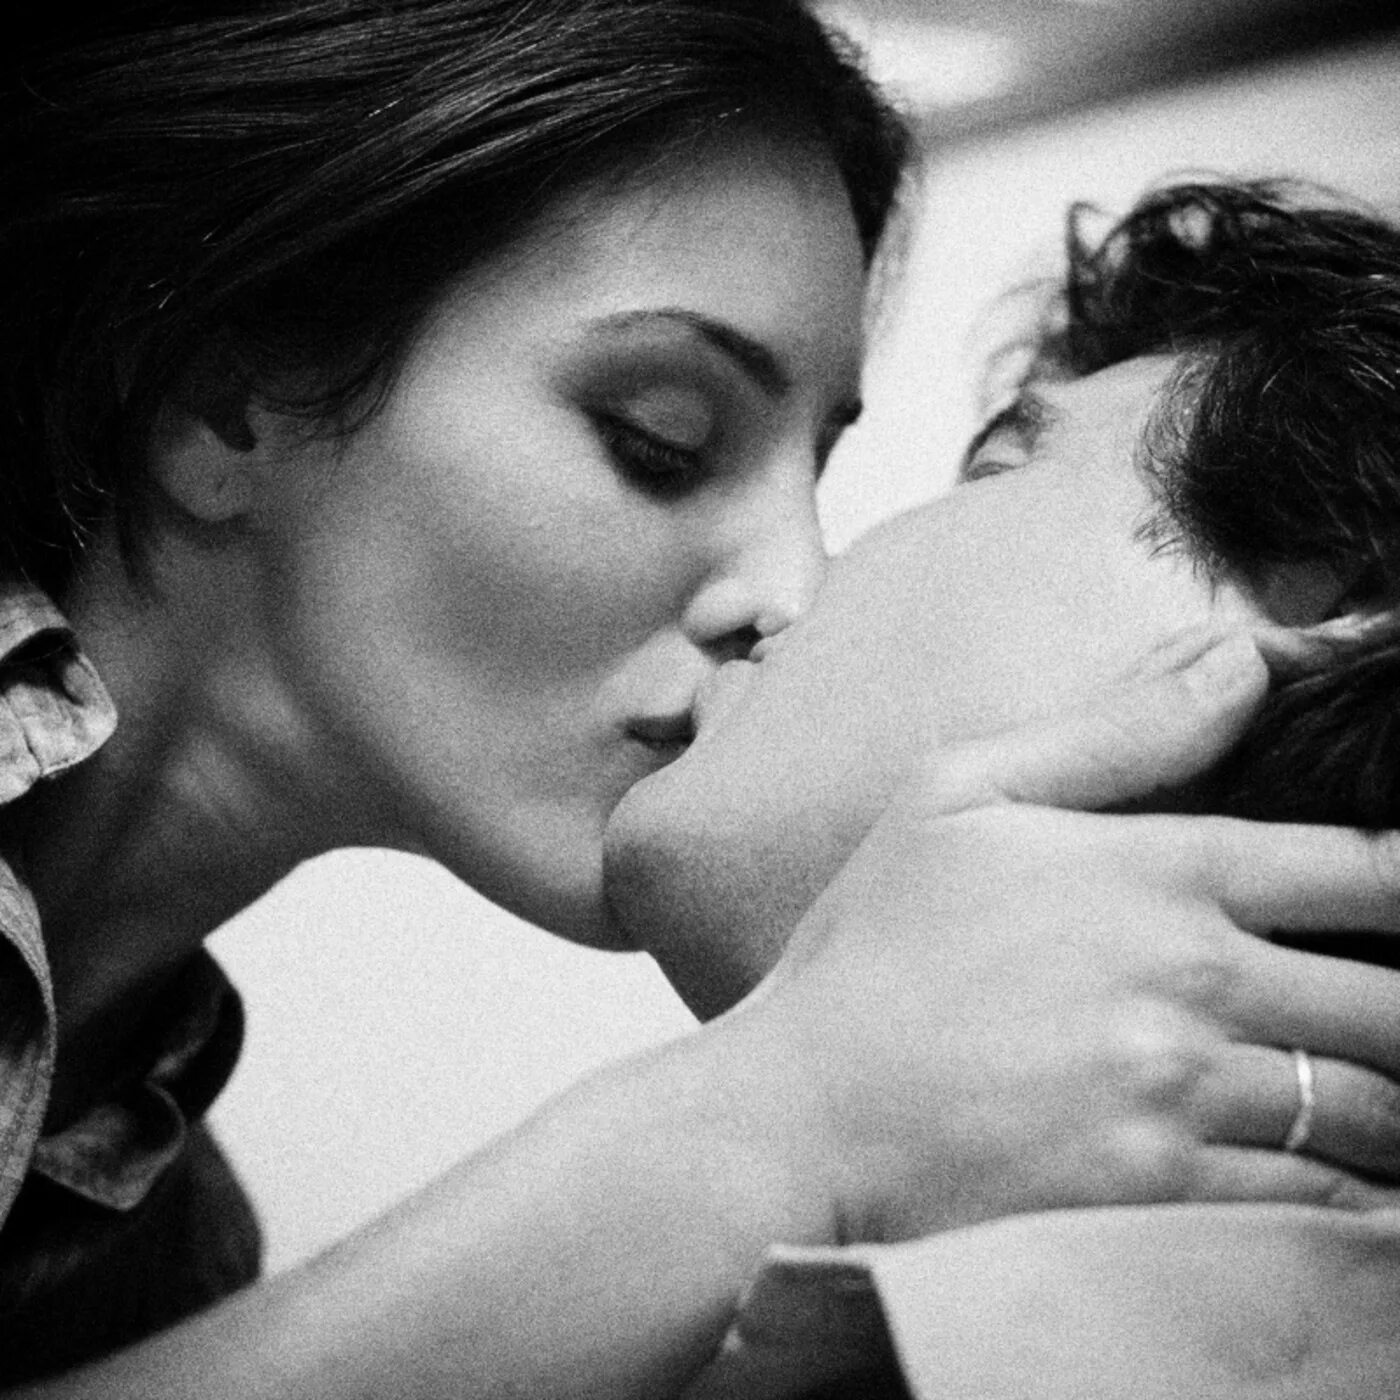 К чему снится целовать женщину мужчине. Поцелуй. Объятия и поцелуи. Нежный поцелуй в щечку. Нежные обнимания и поцелуи.